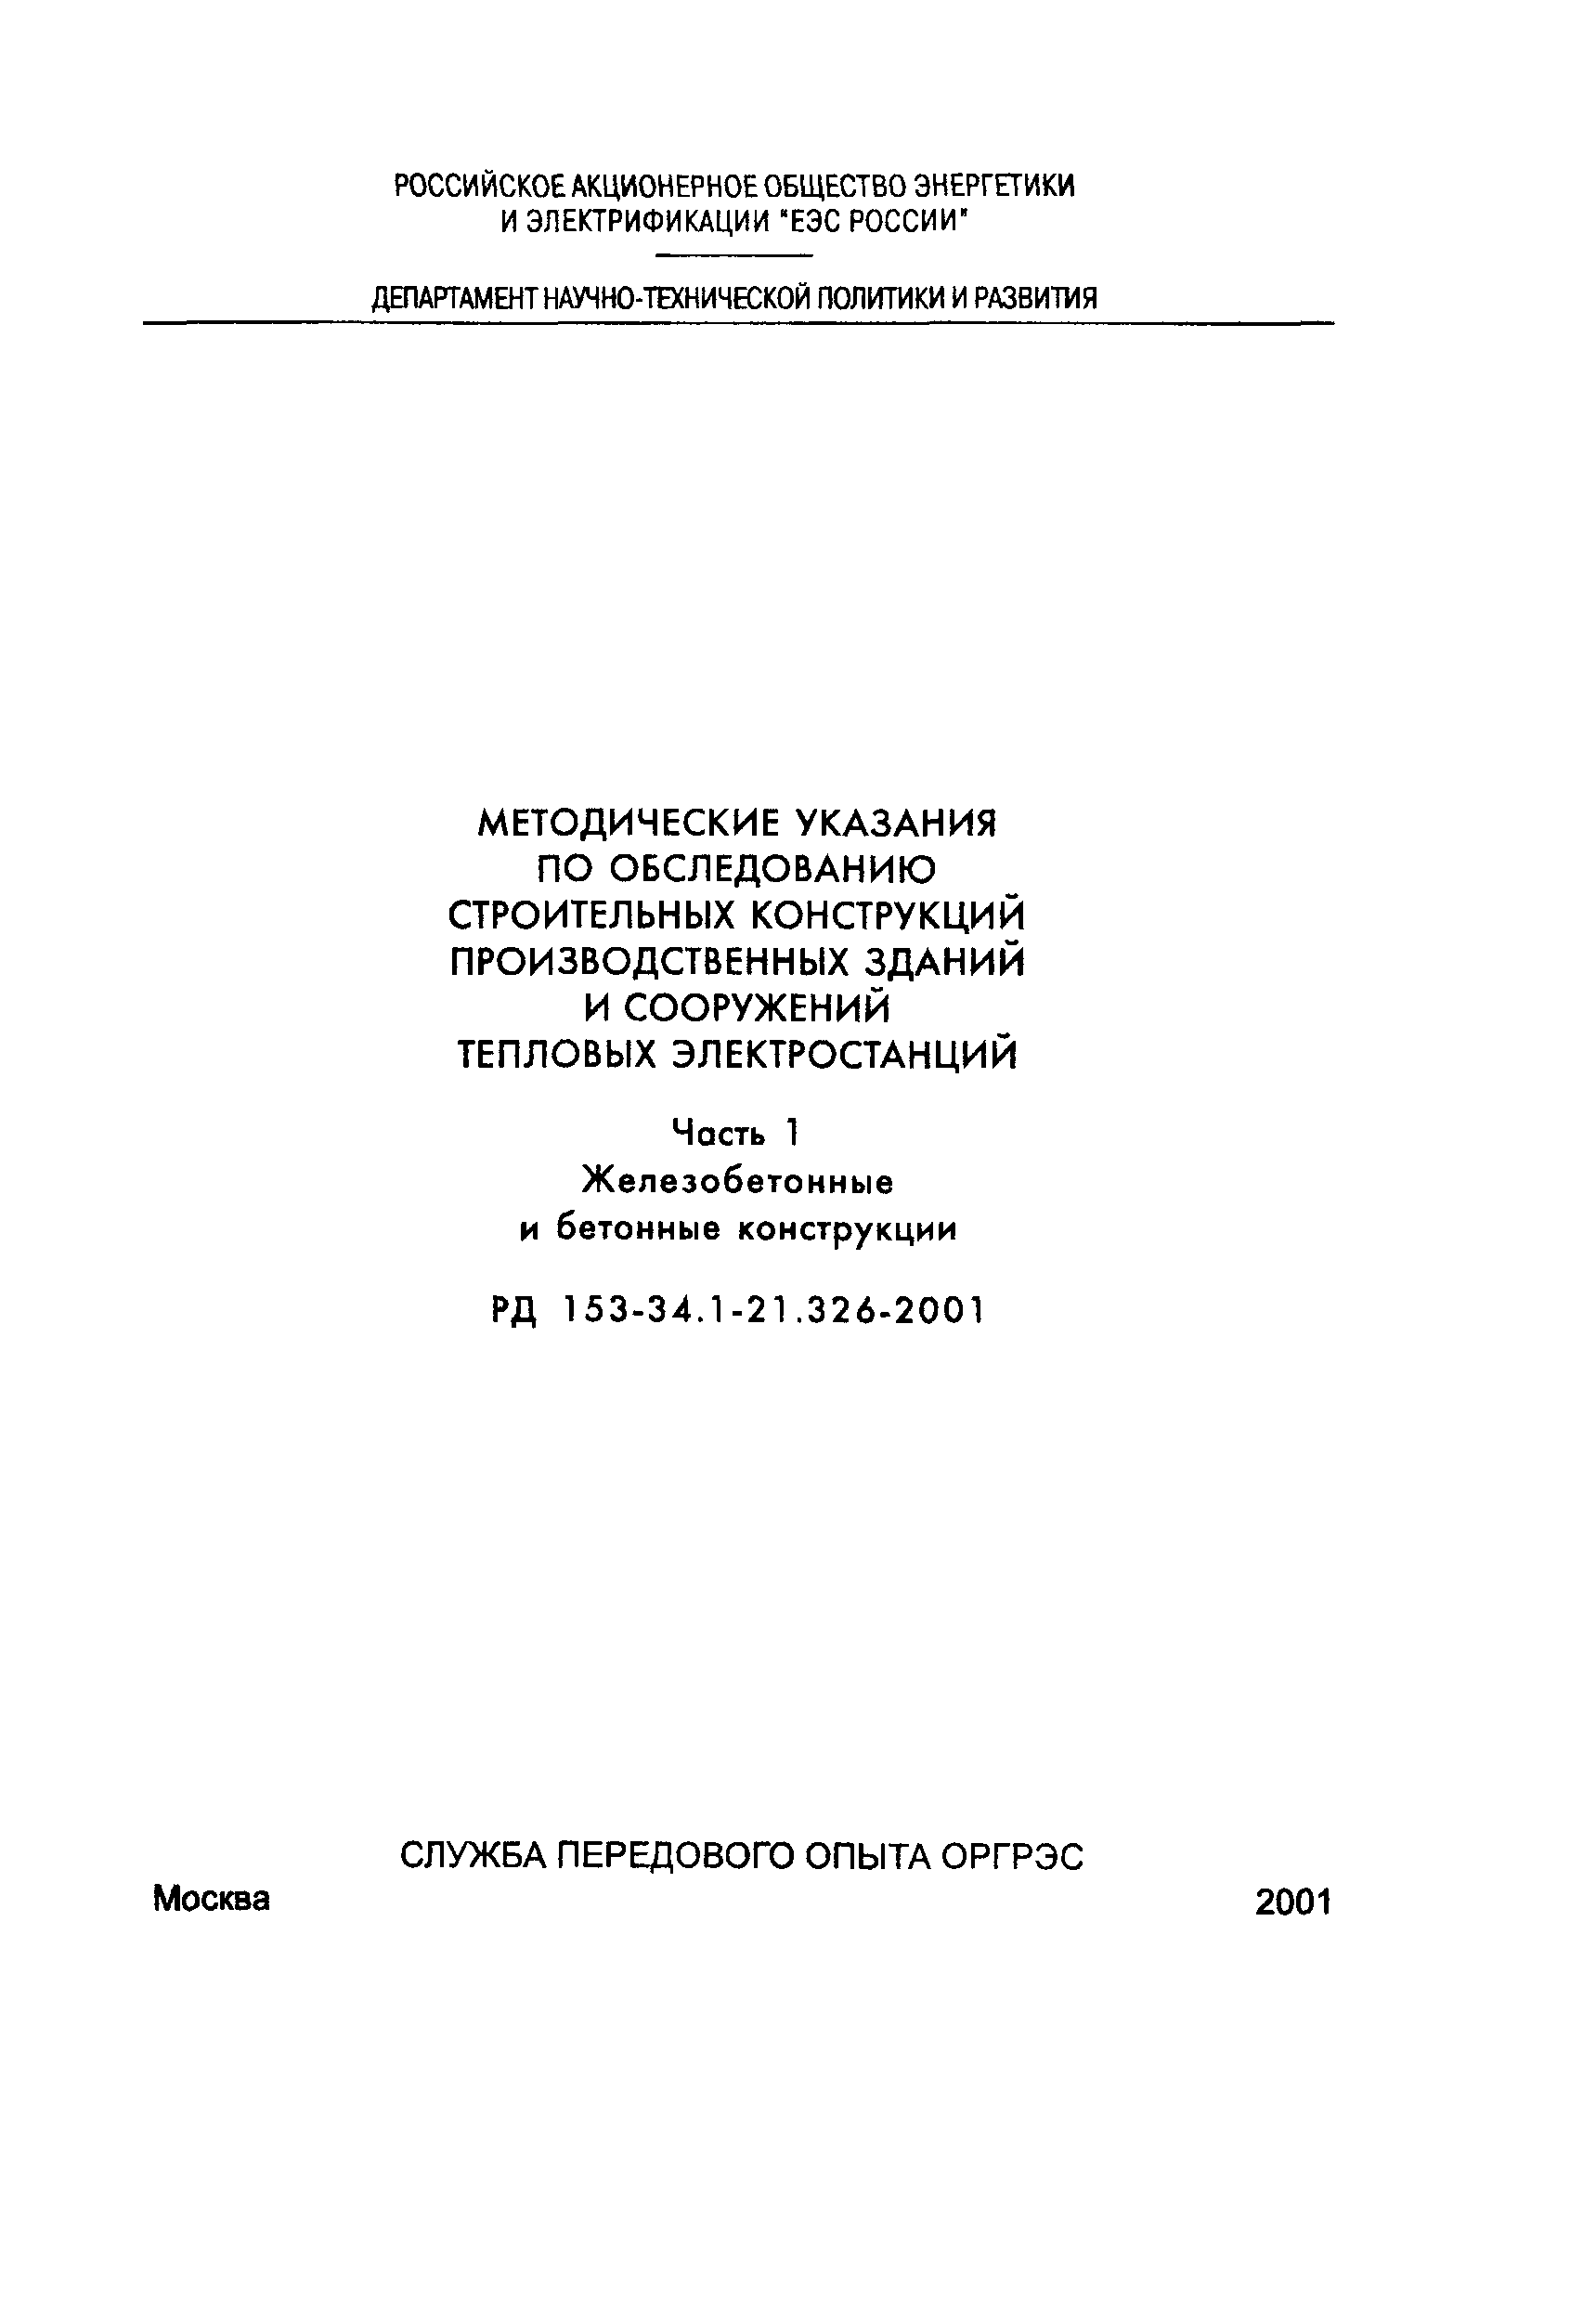 РД 153-34.1-21.326-2001